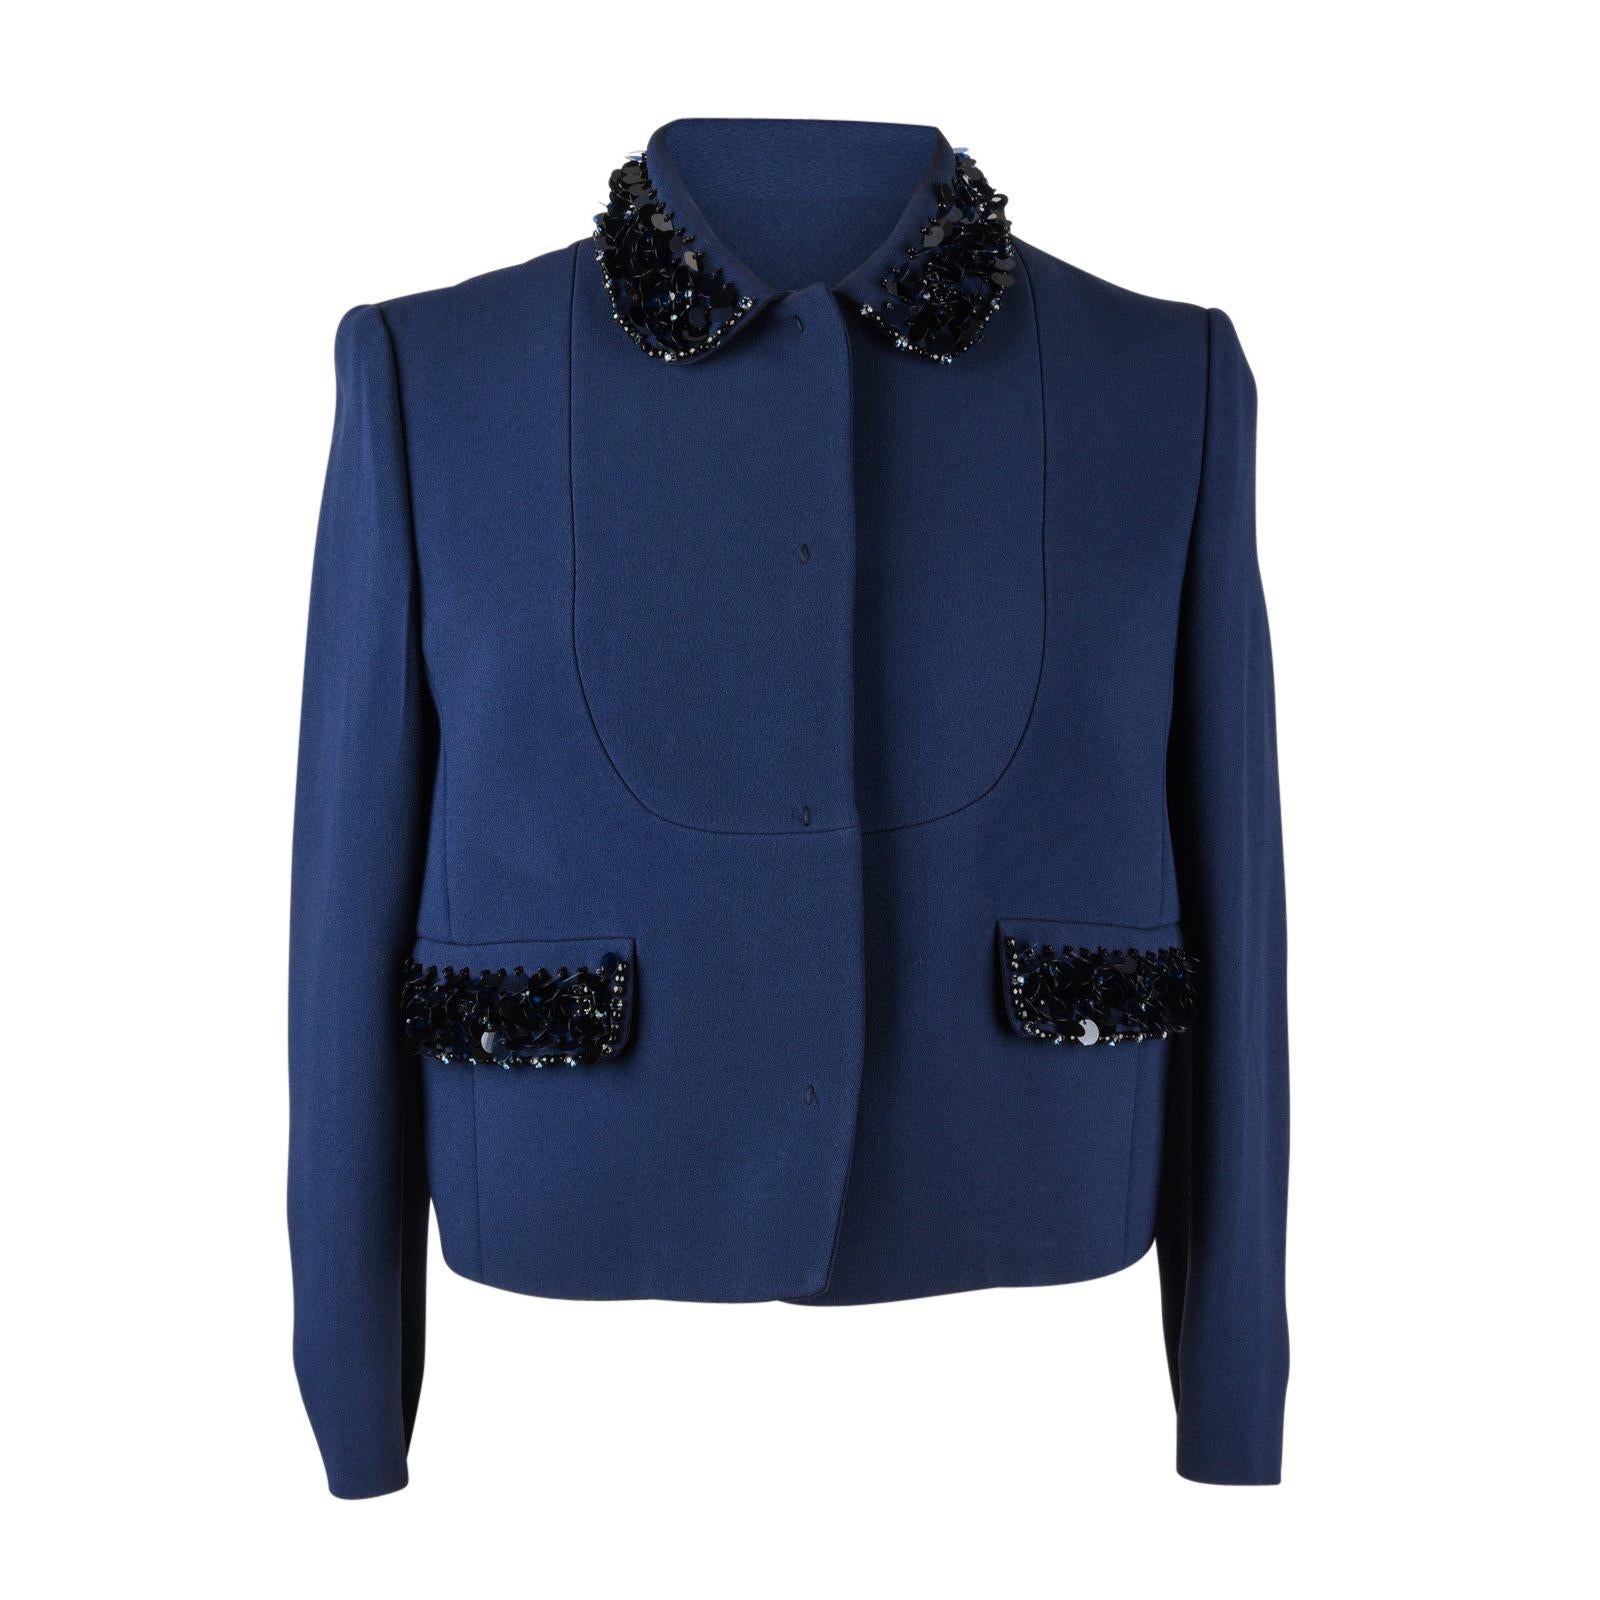 Miu Miu Jacket Navy Embellished Collar / Pockets 3/4 Sleeve 42